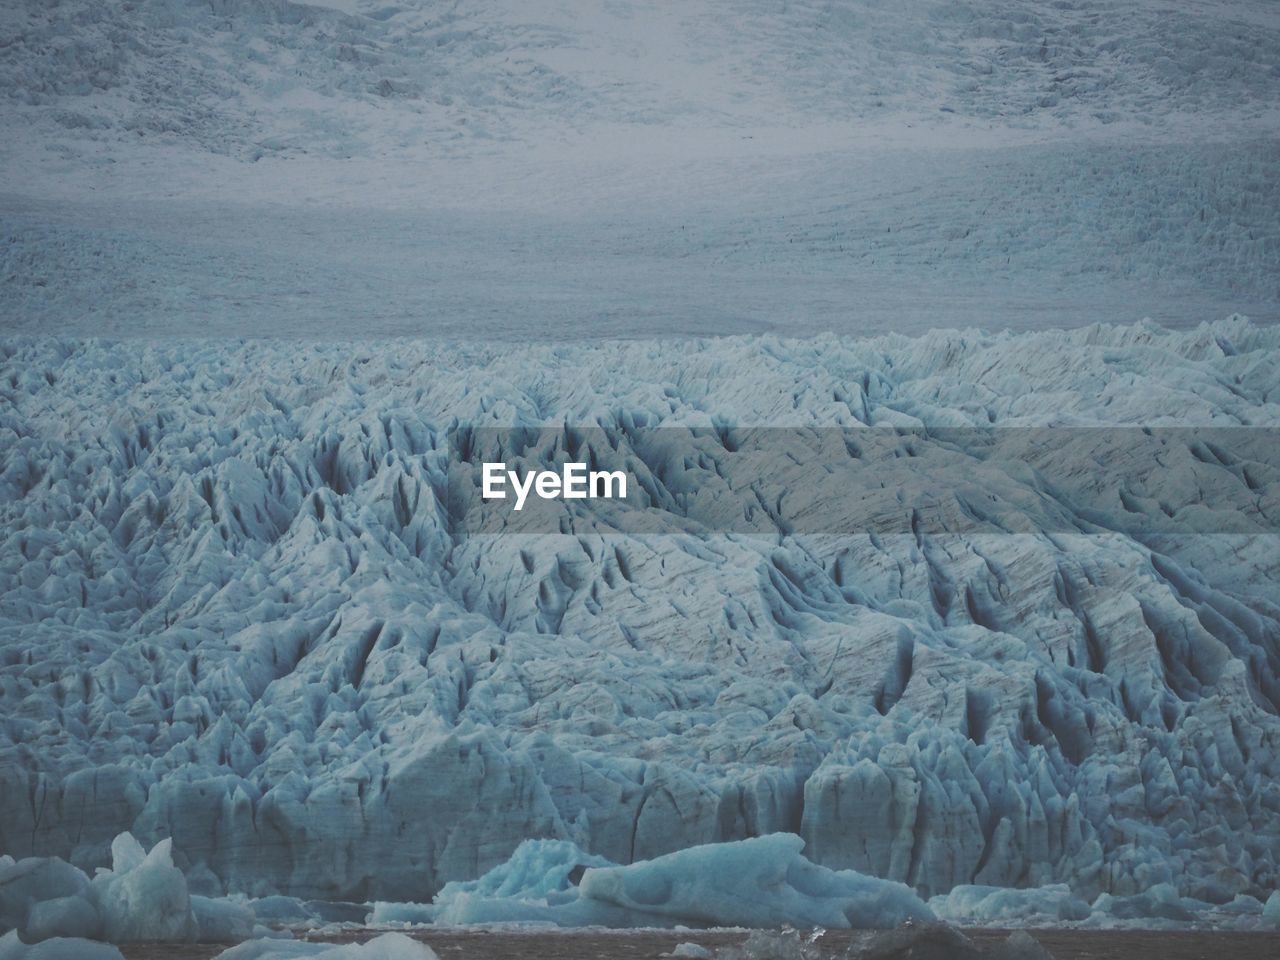 Scenic view of a glacier